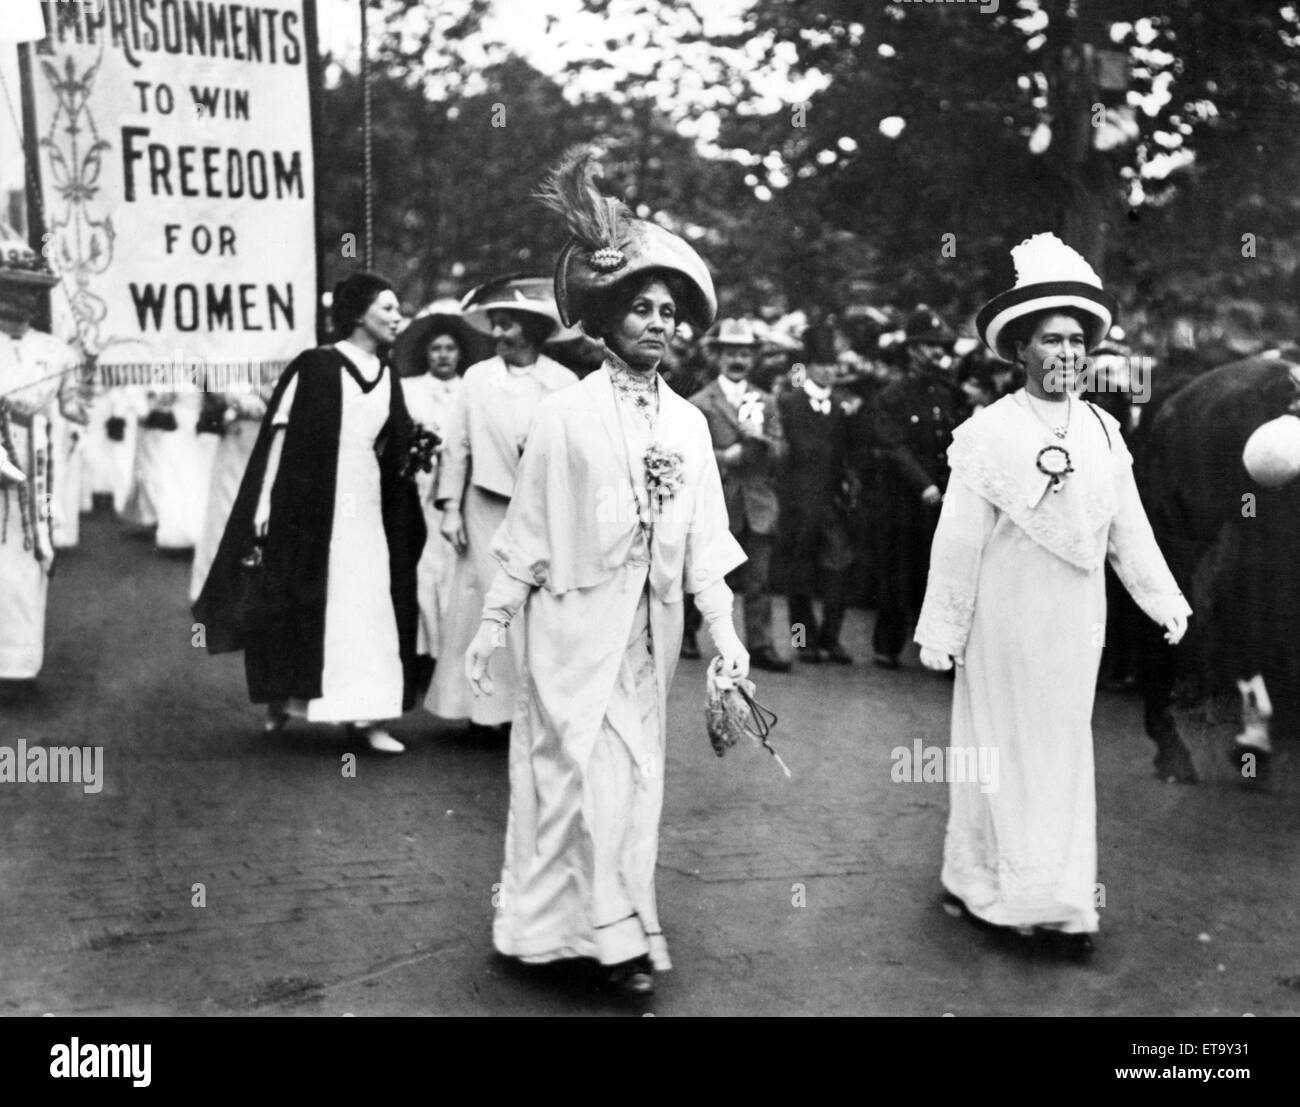 Dame Pethick-Lawrence (droite) et Mme Pankhurst mener une manifestation des suffragettes, Sylvain Pankhurst (en noir et blanc) suit derrière sa mère. Vers 1910. Banque D'Images